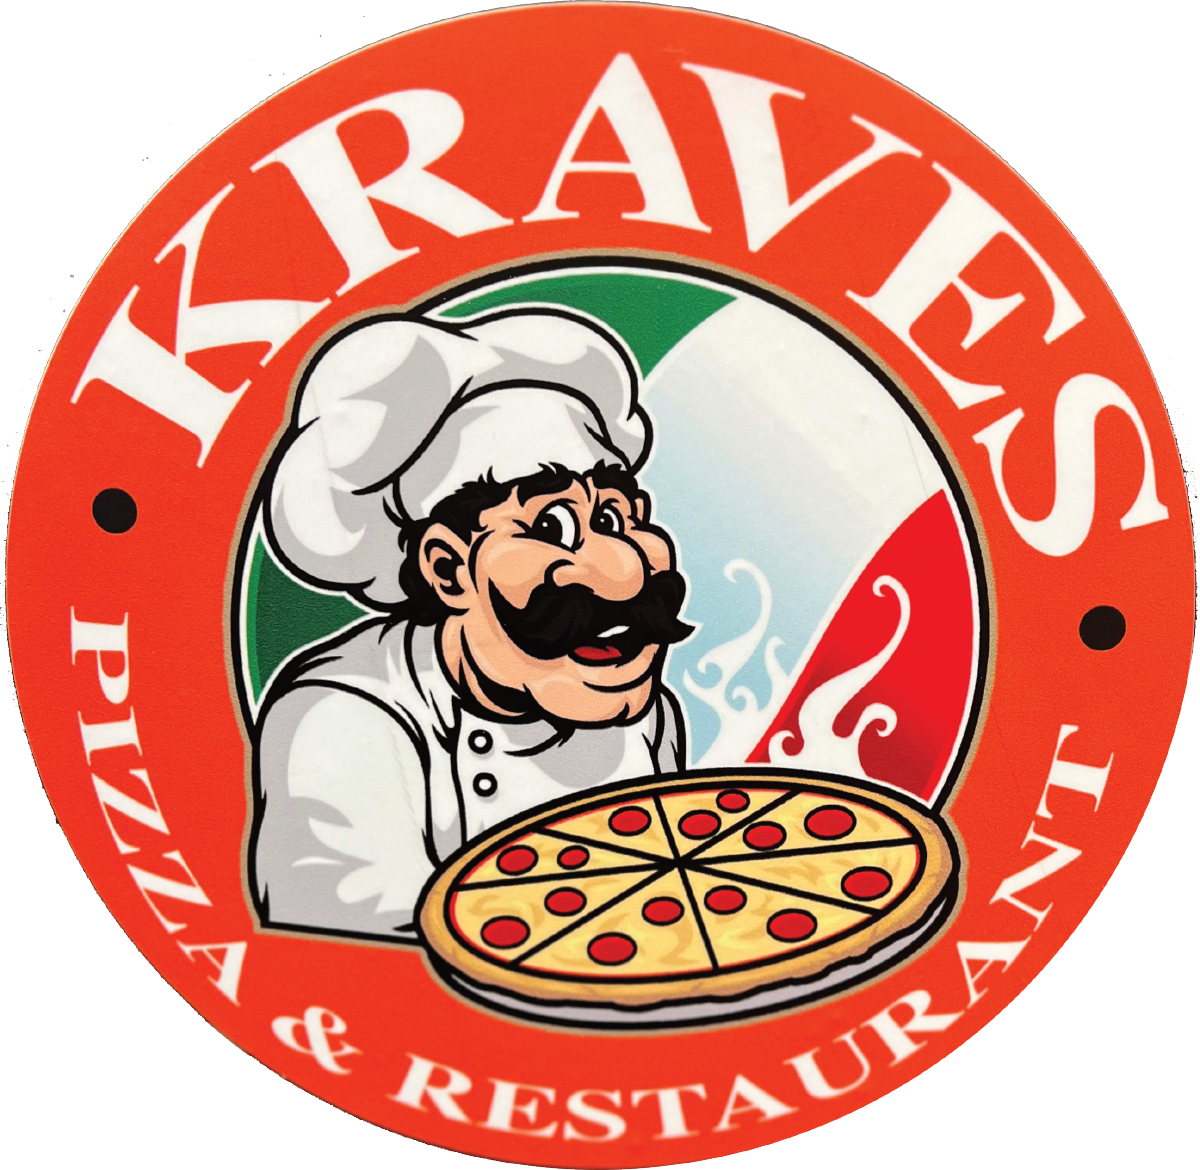 Kraves Pizza &amp; Restaurant